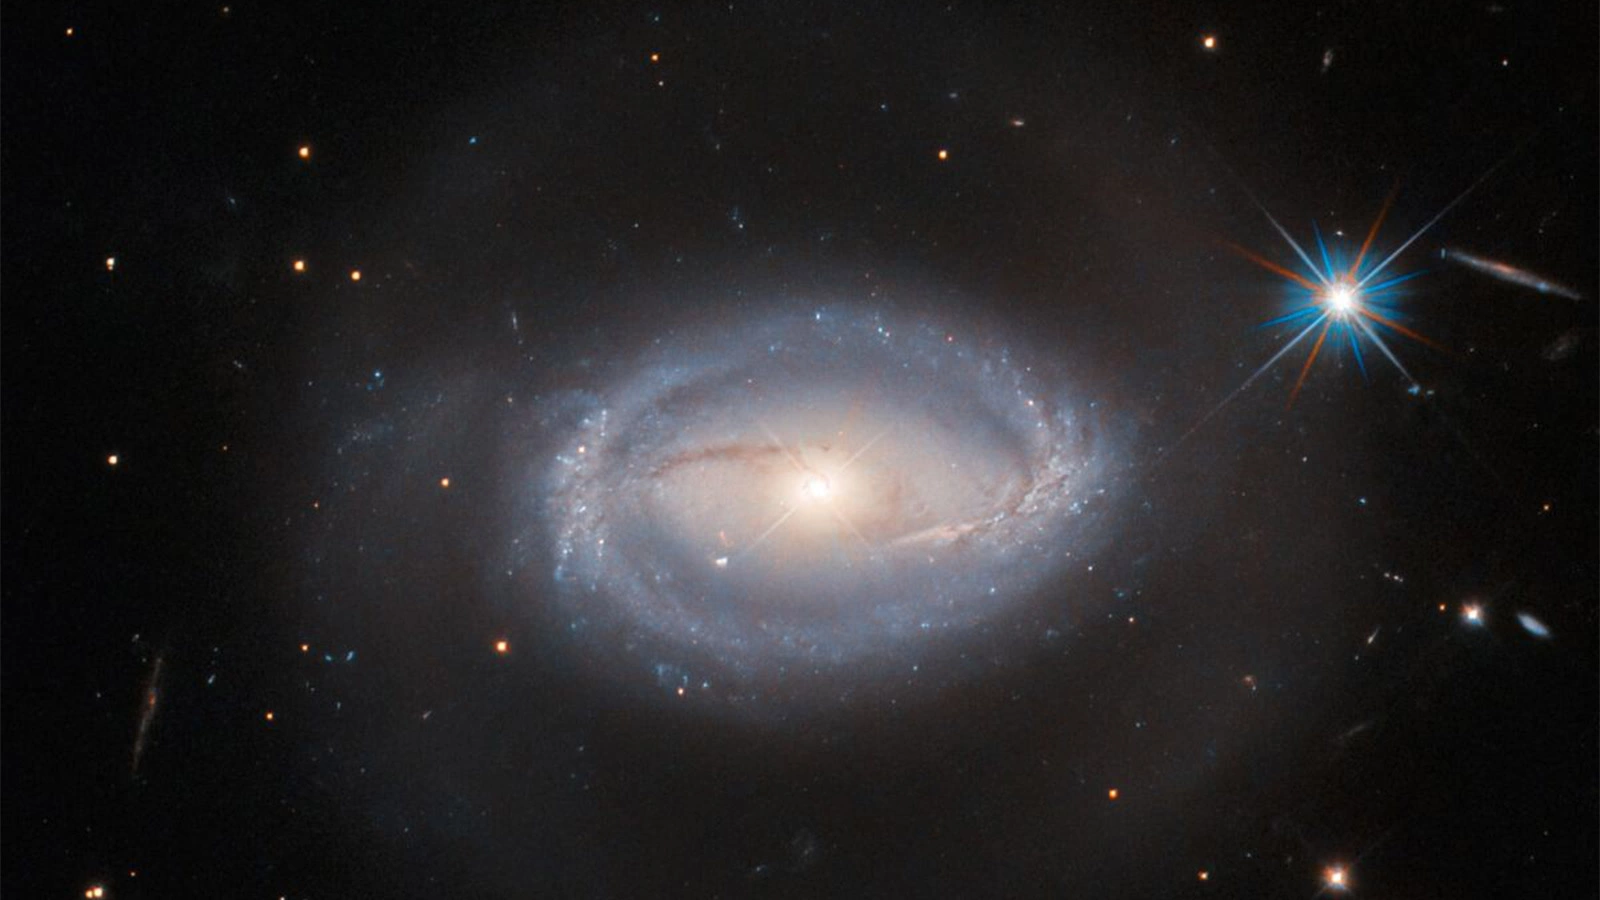 ESA / Hubble & NASA, A. Barth, R. Mushotzky